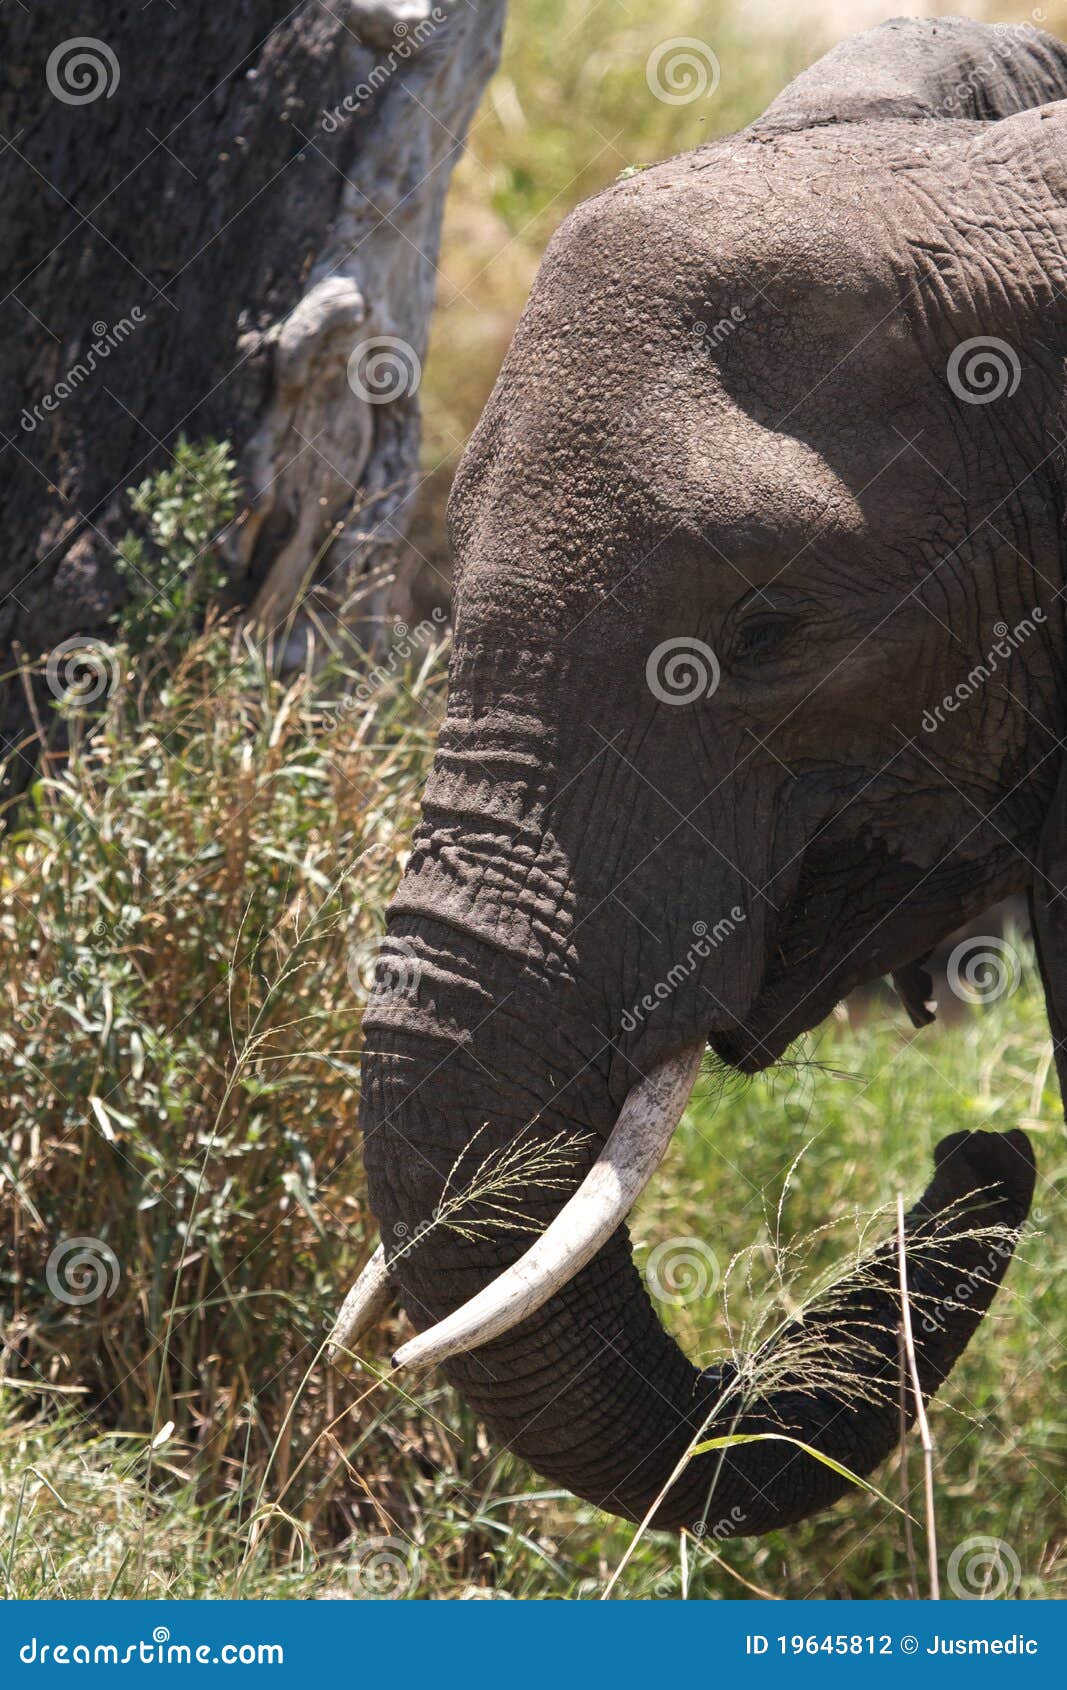 Afrikaanse Olifant met slagtanden. Afrikaanse Olifant die met slagtanden gras eet